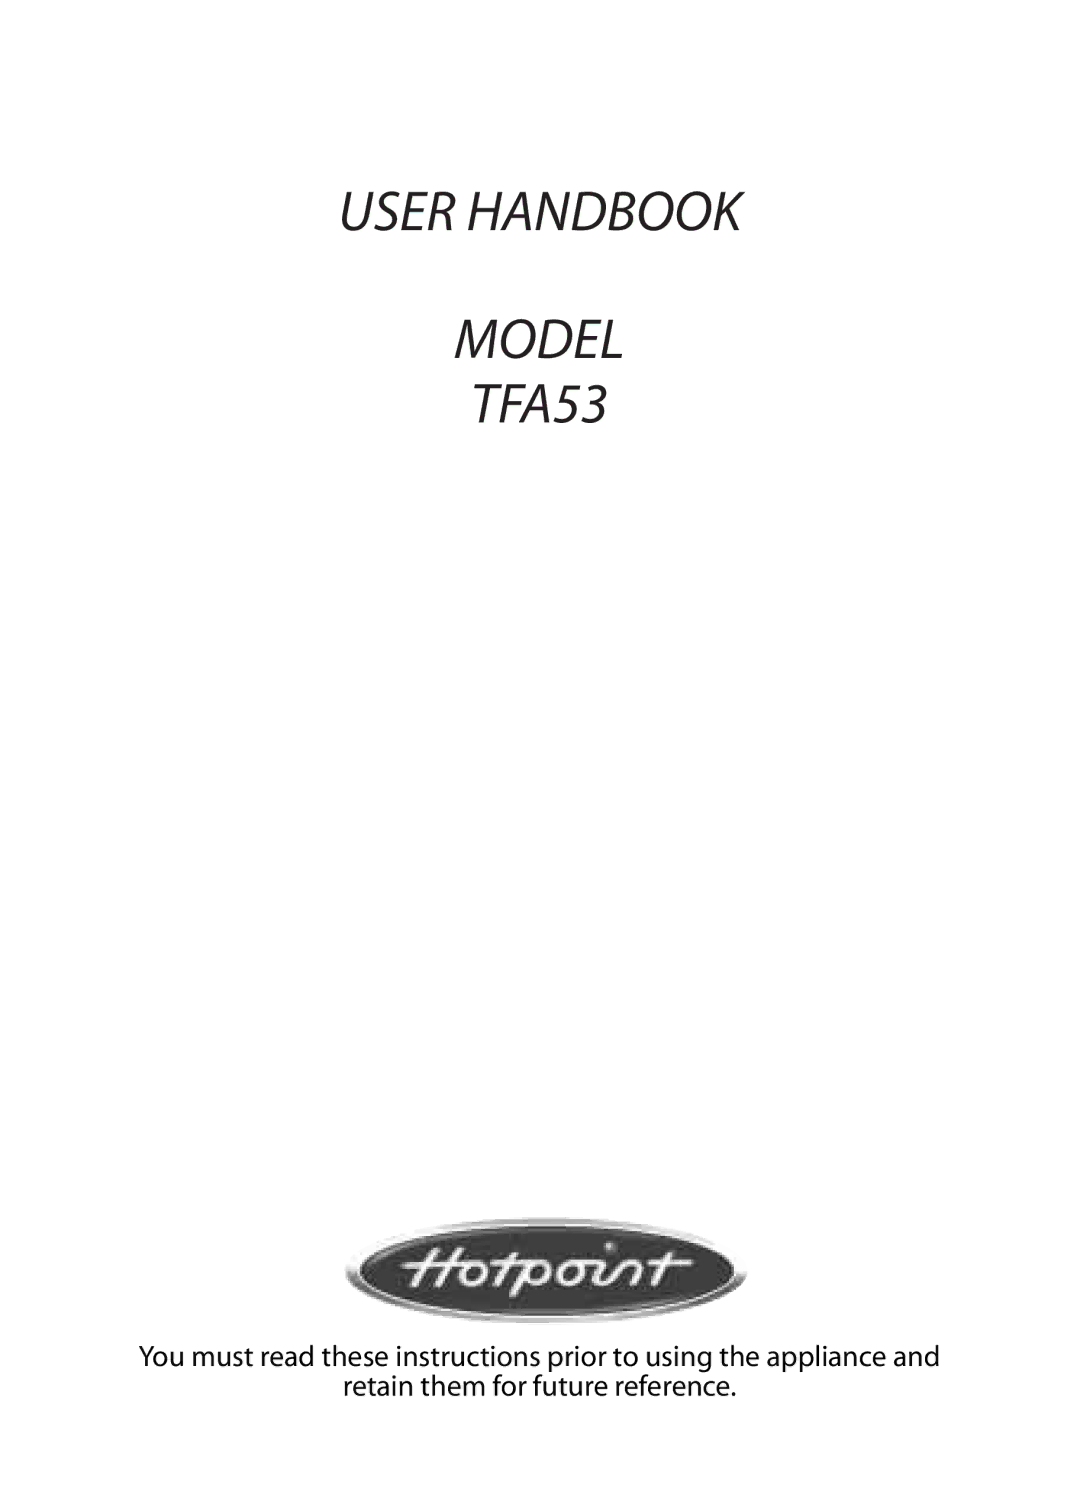 Hotpoint manual User Handbook Model TFA53 